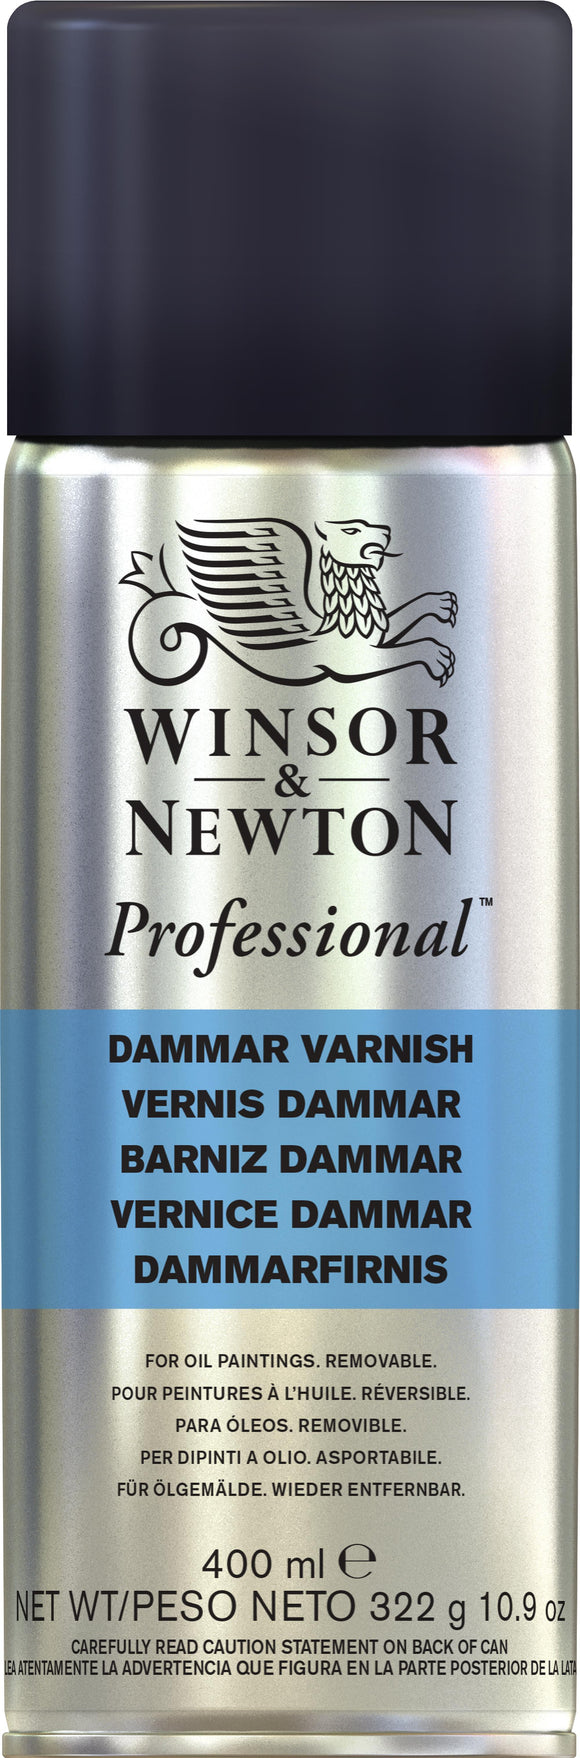 Winsor & Newton Dammar Varnish Spray 400Ml